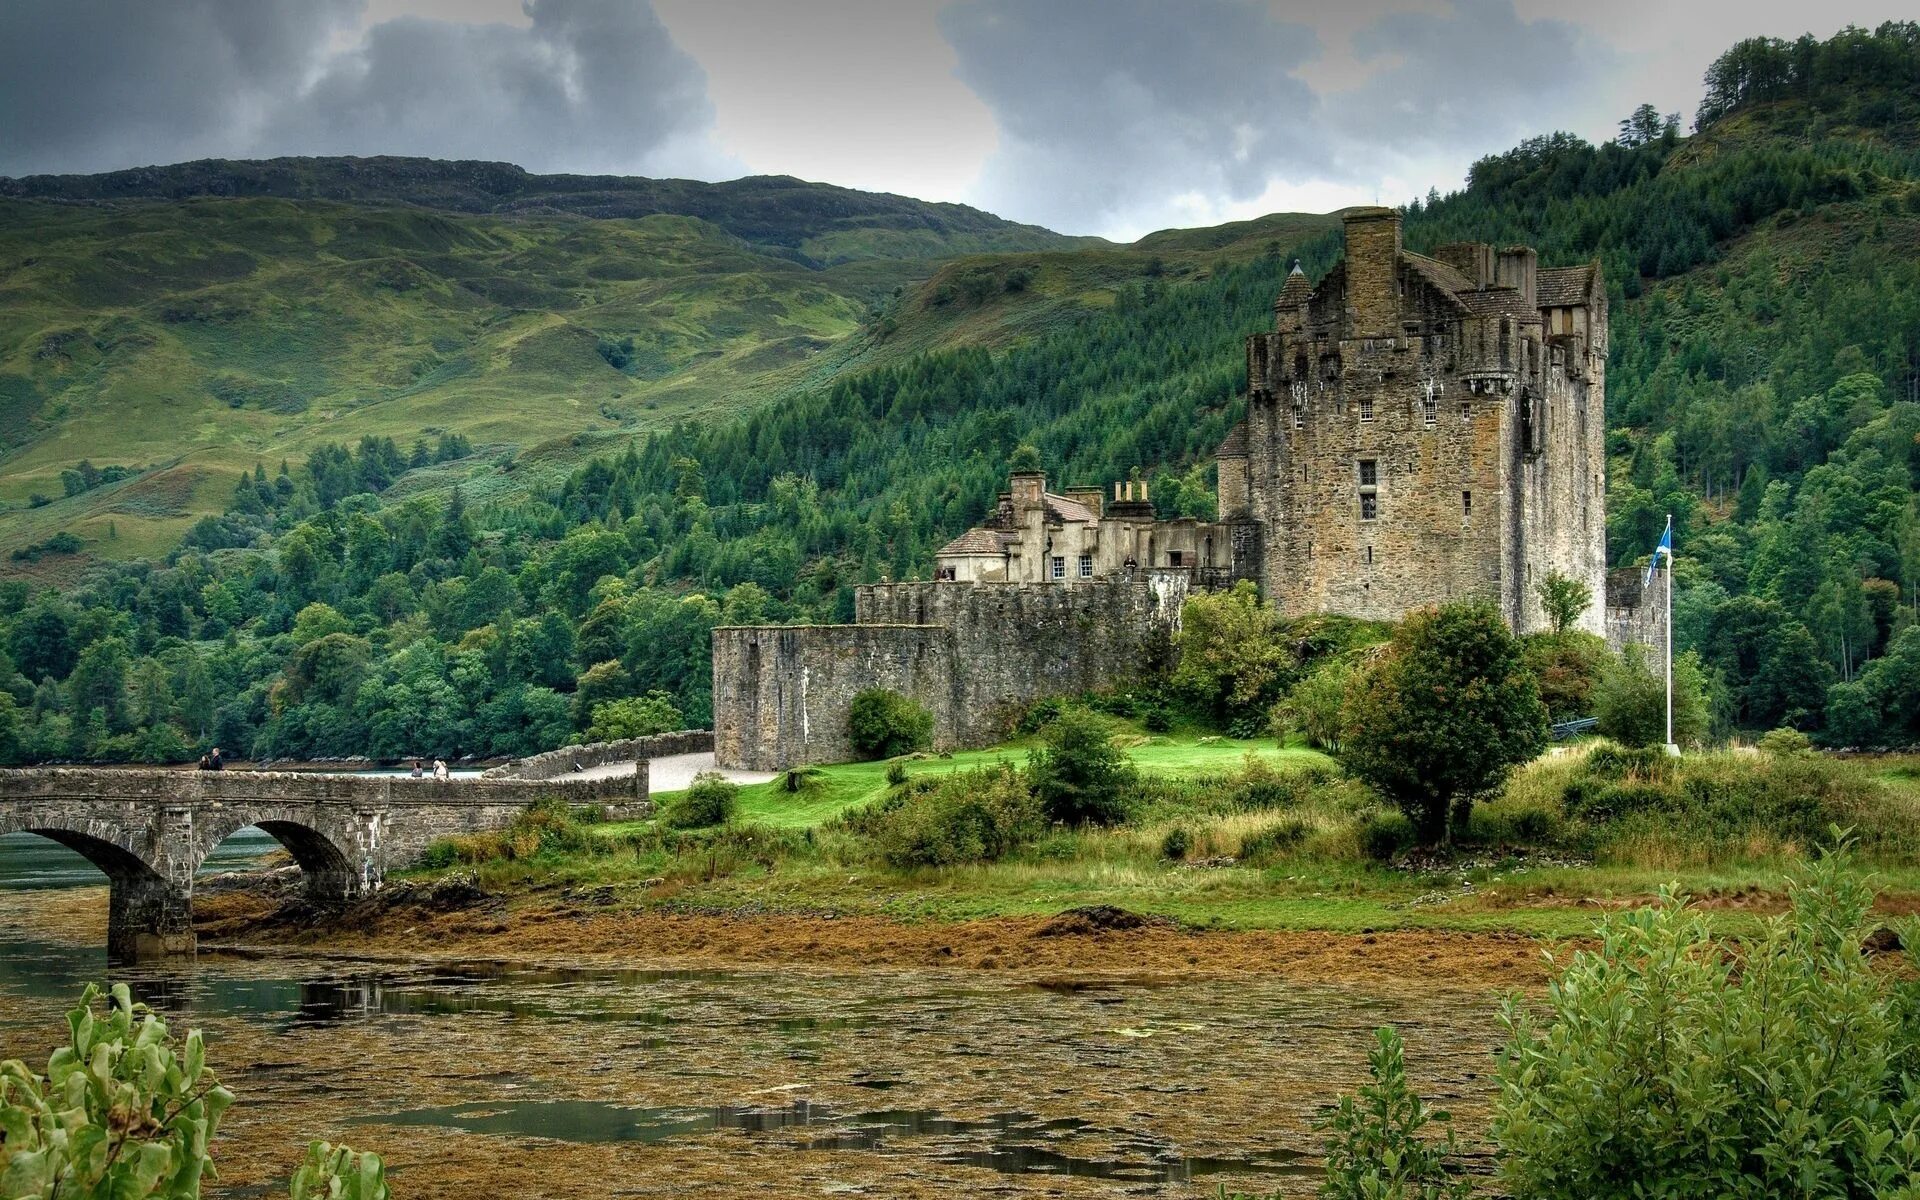 Scotland is beautiful. Замок Эйлен-Донан Шотландия. Замок Килхурн, Шотландия. Замок Эмброуз Шотландия. Замок «Грайч», Уэльс.